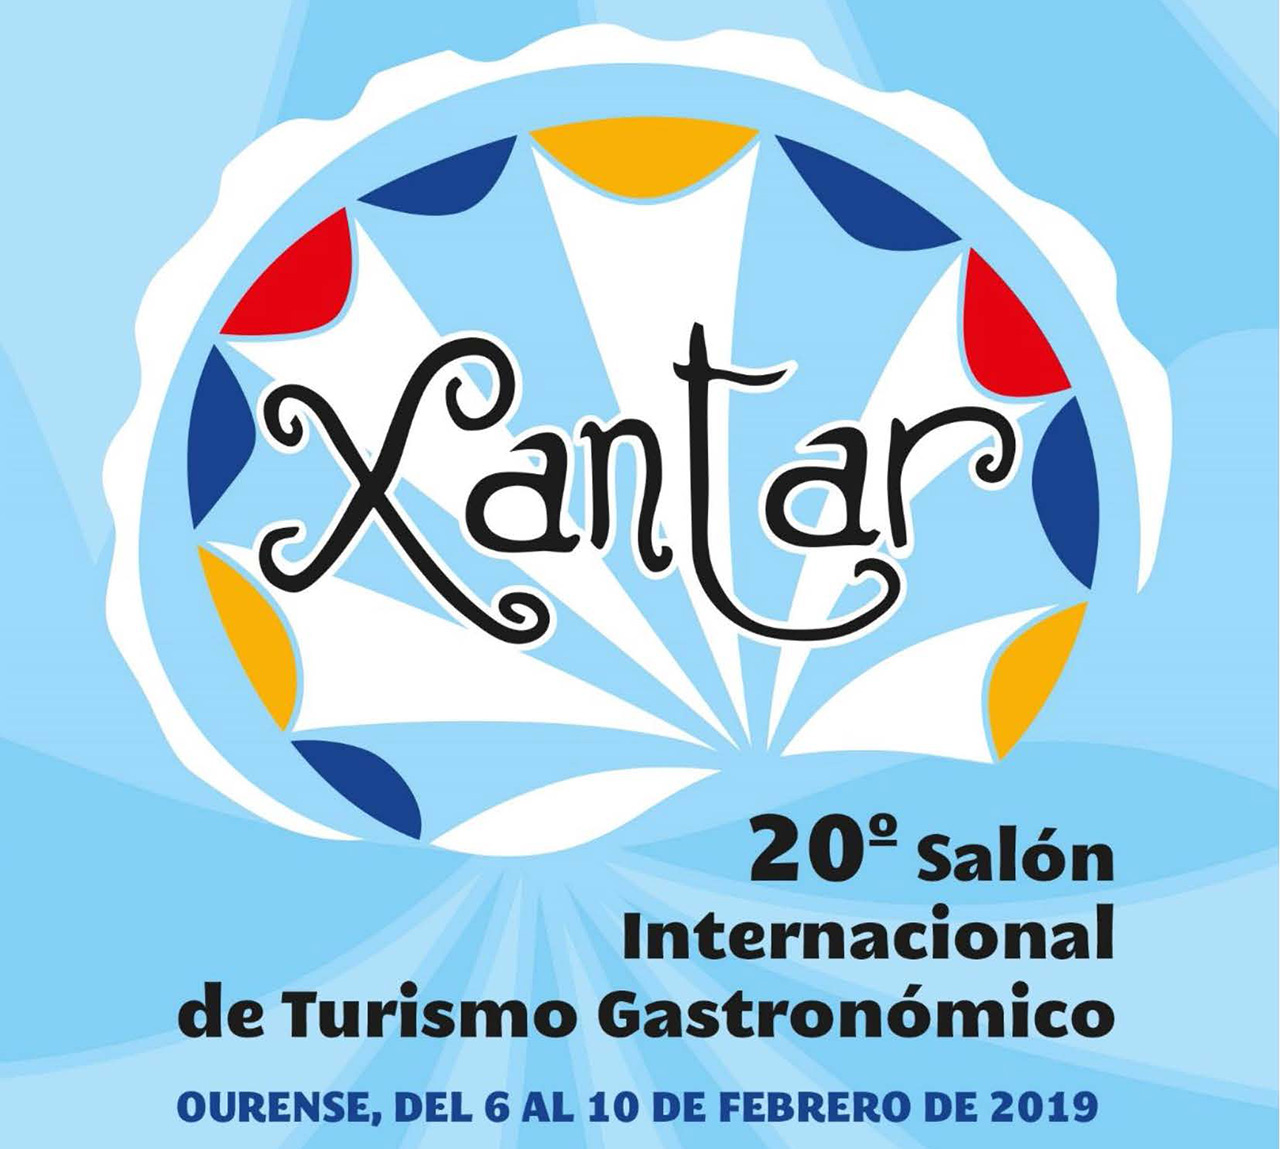 Município de Boticas participa na Feira Internacional de Turismo Gastronómico de Ourense